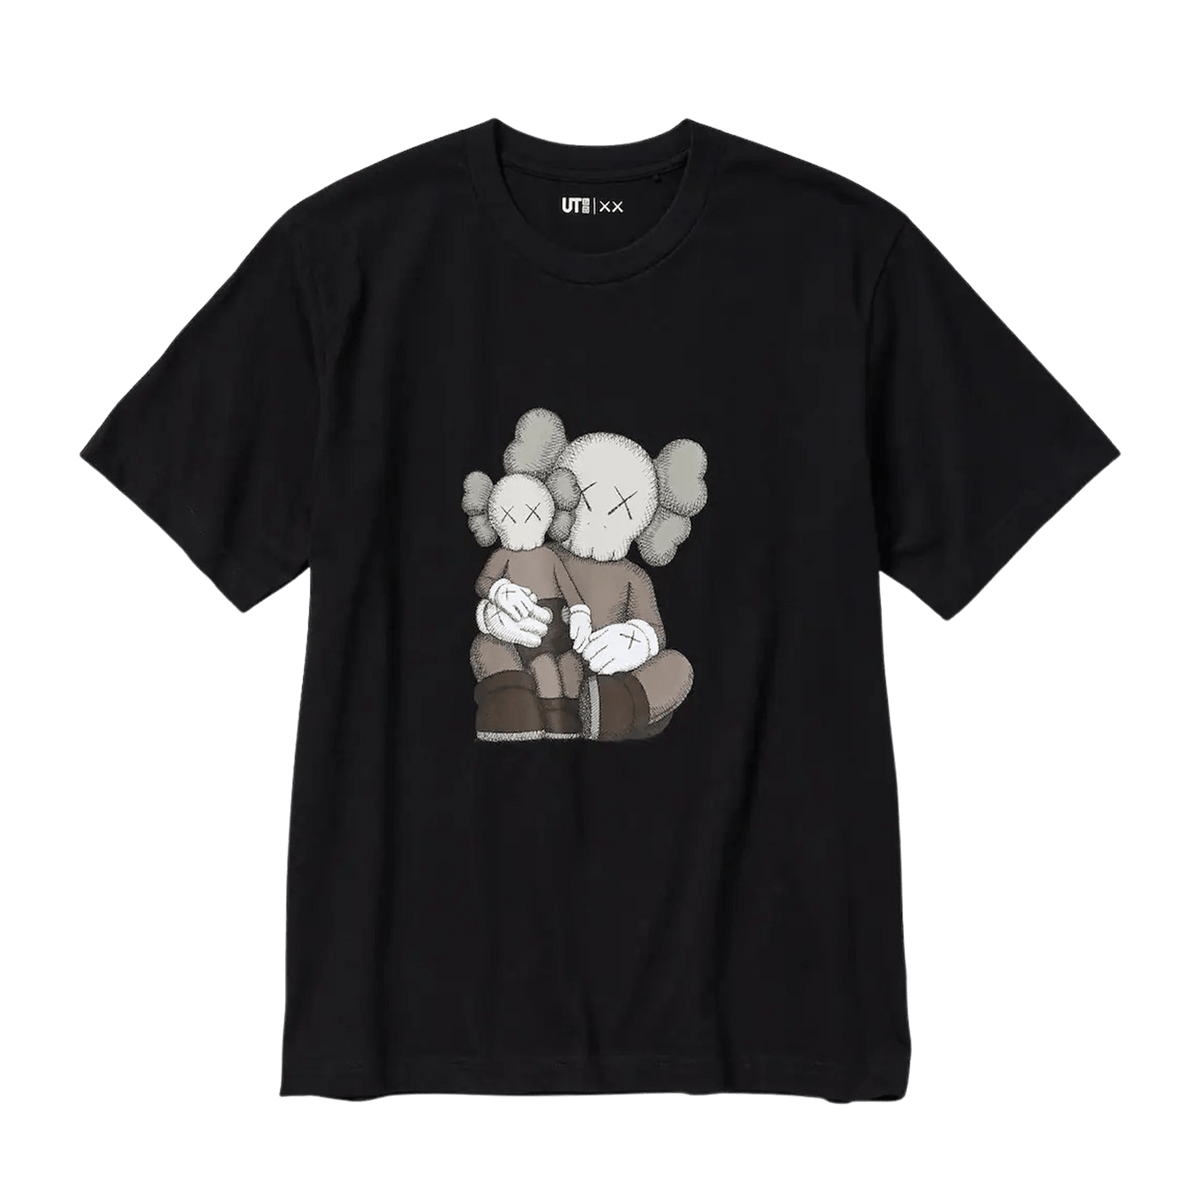 KAWS x UNIQLO UT Graphic T-Shirt 'Black' - JuzsportsShops